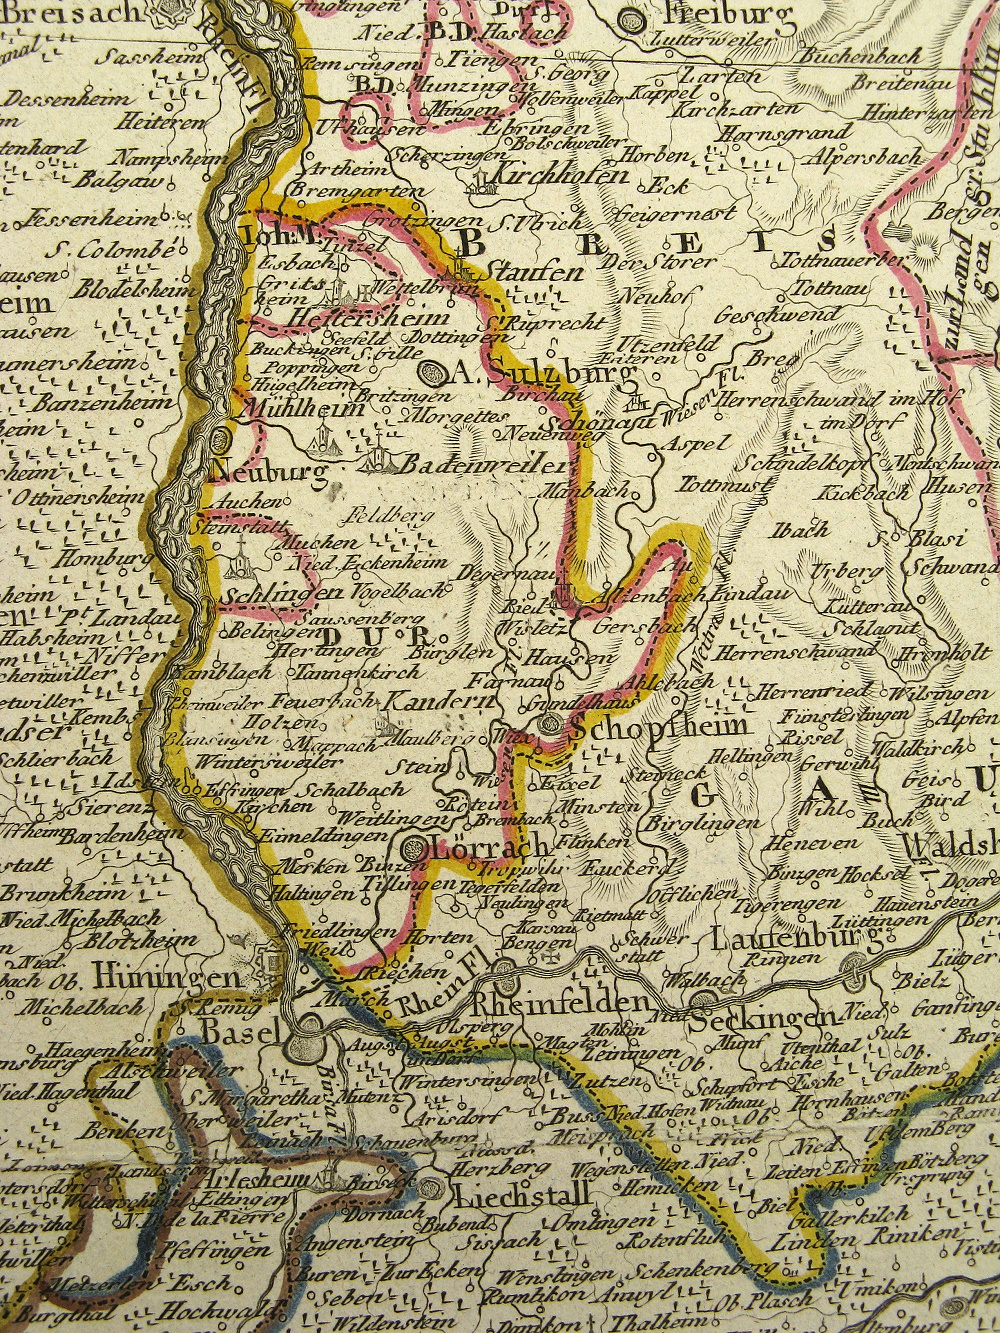 Landkarte Landvogtei Schlingen, Neuburg am Rhein, Badenweiler, Schopfheim, Laufenburg, Lörrach, Festung Hünningen, Basel, Rheinfelden, Seckingen, Arlesheim, Liechstall 